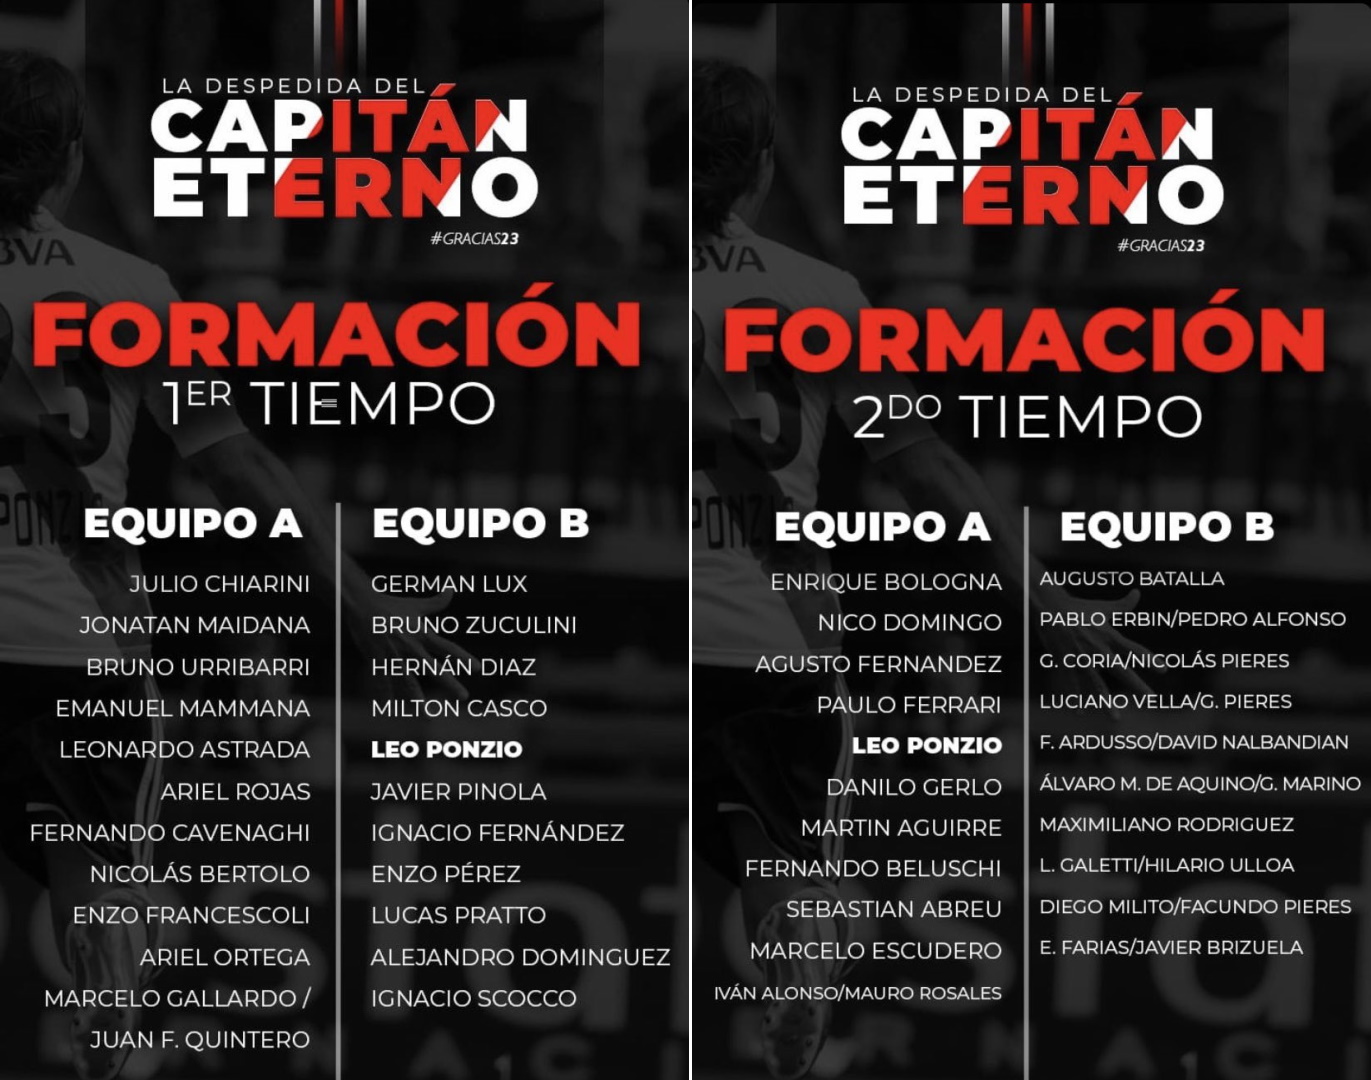 Las formaciones en la despedida de Leo Ponzio con leyendas de River Plate (@Nacho_Lotitto)